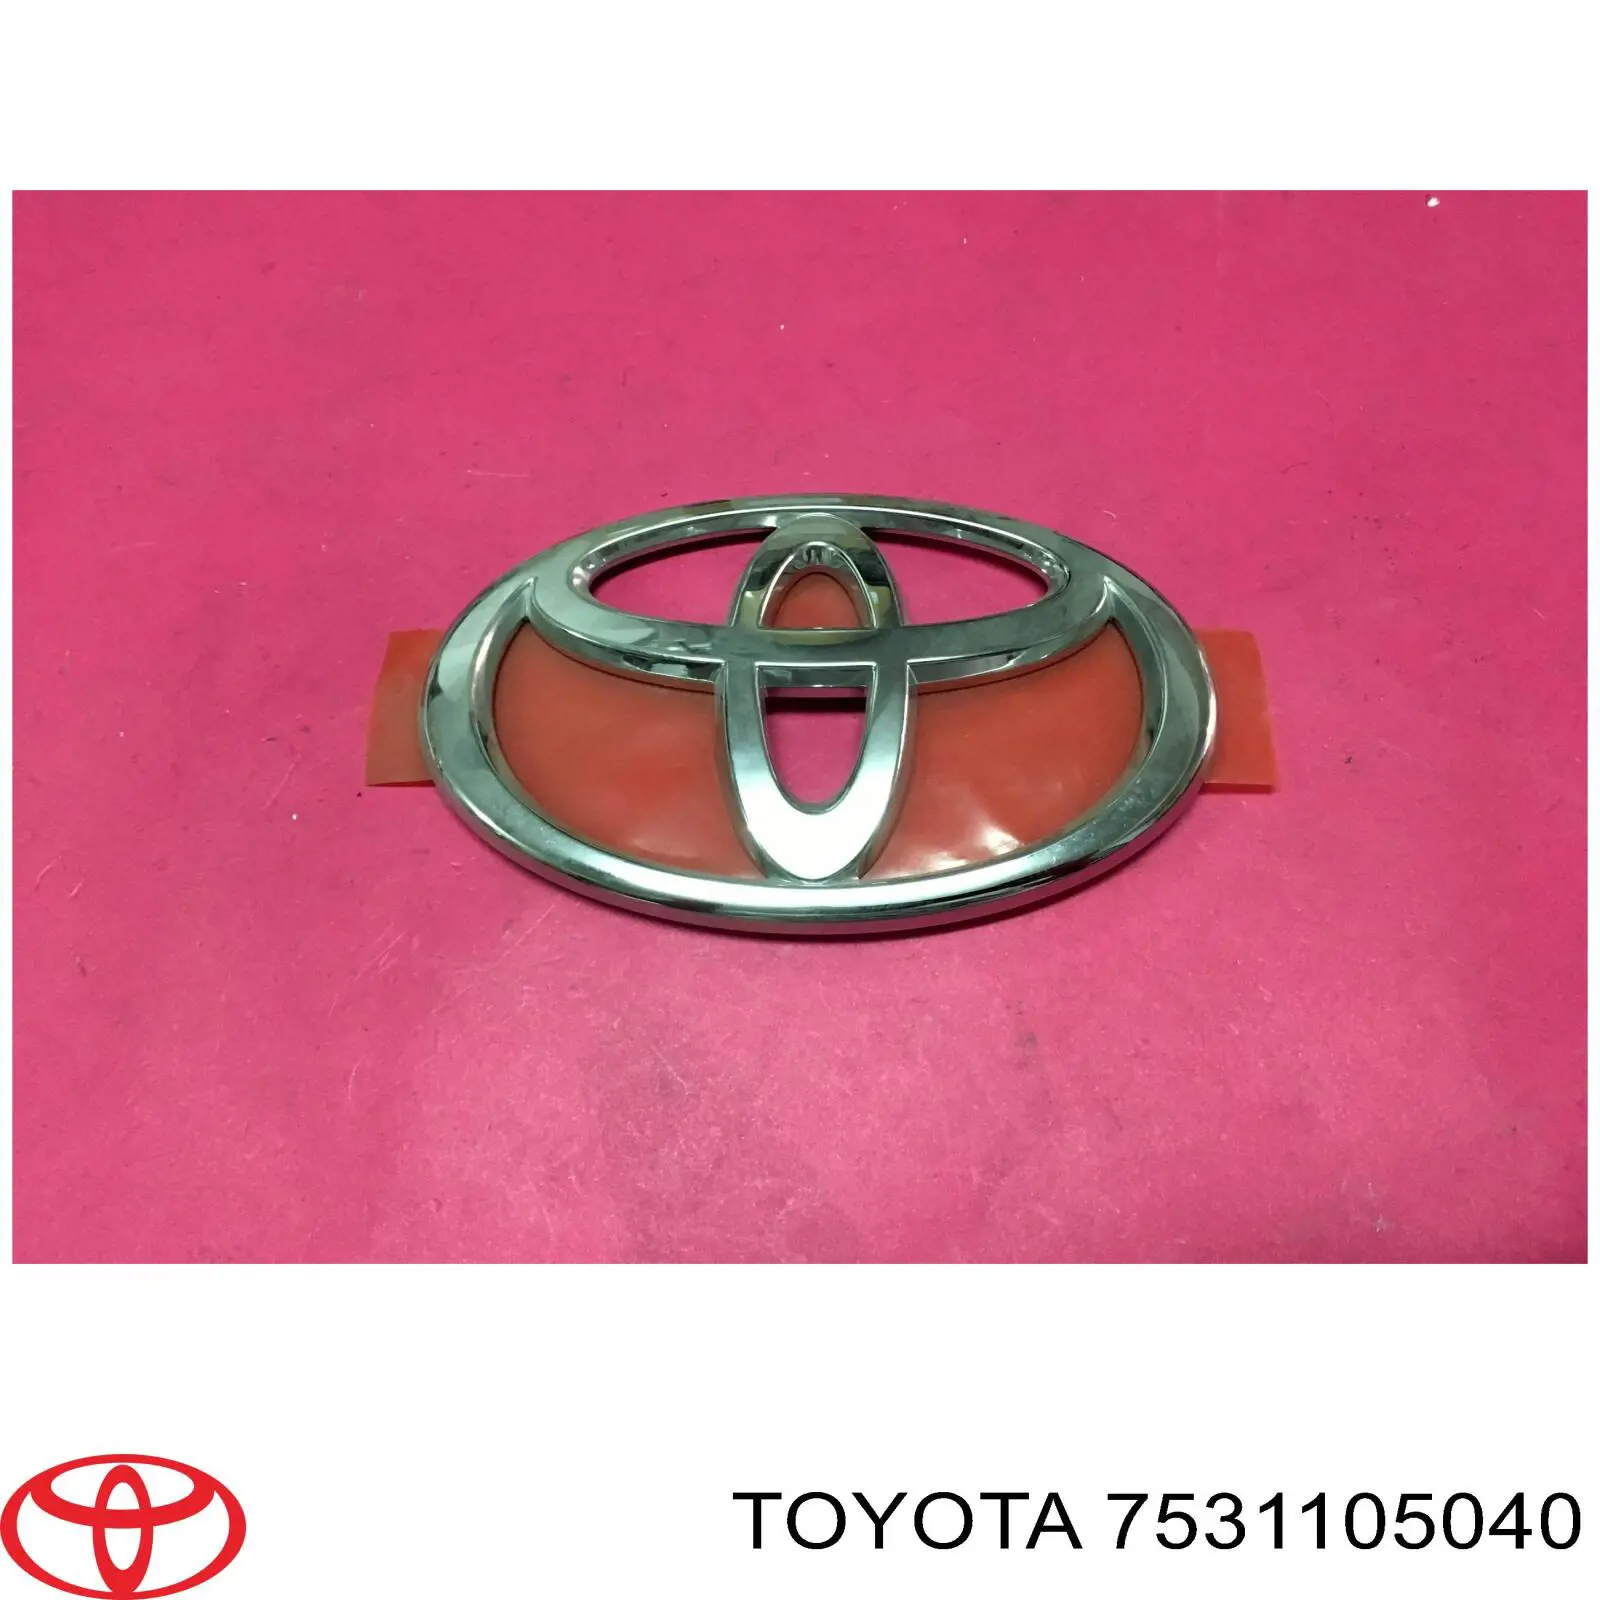 Emblema de la rejilla para Toyota Corolla (E18)